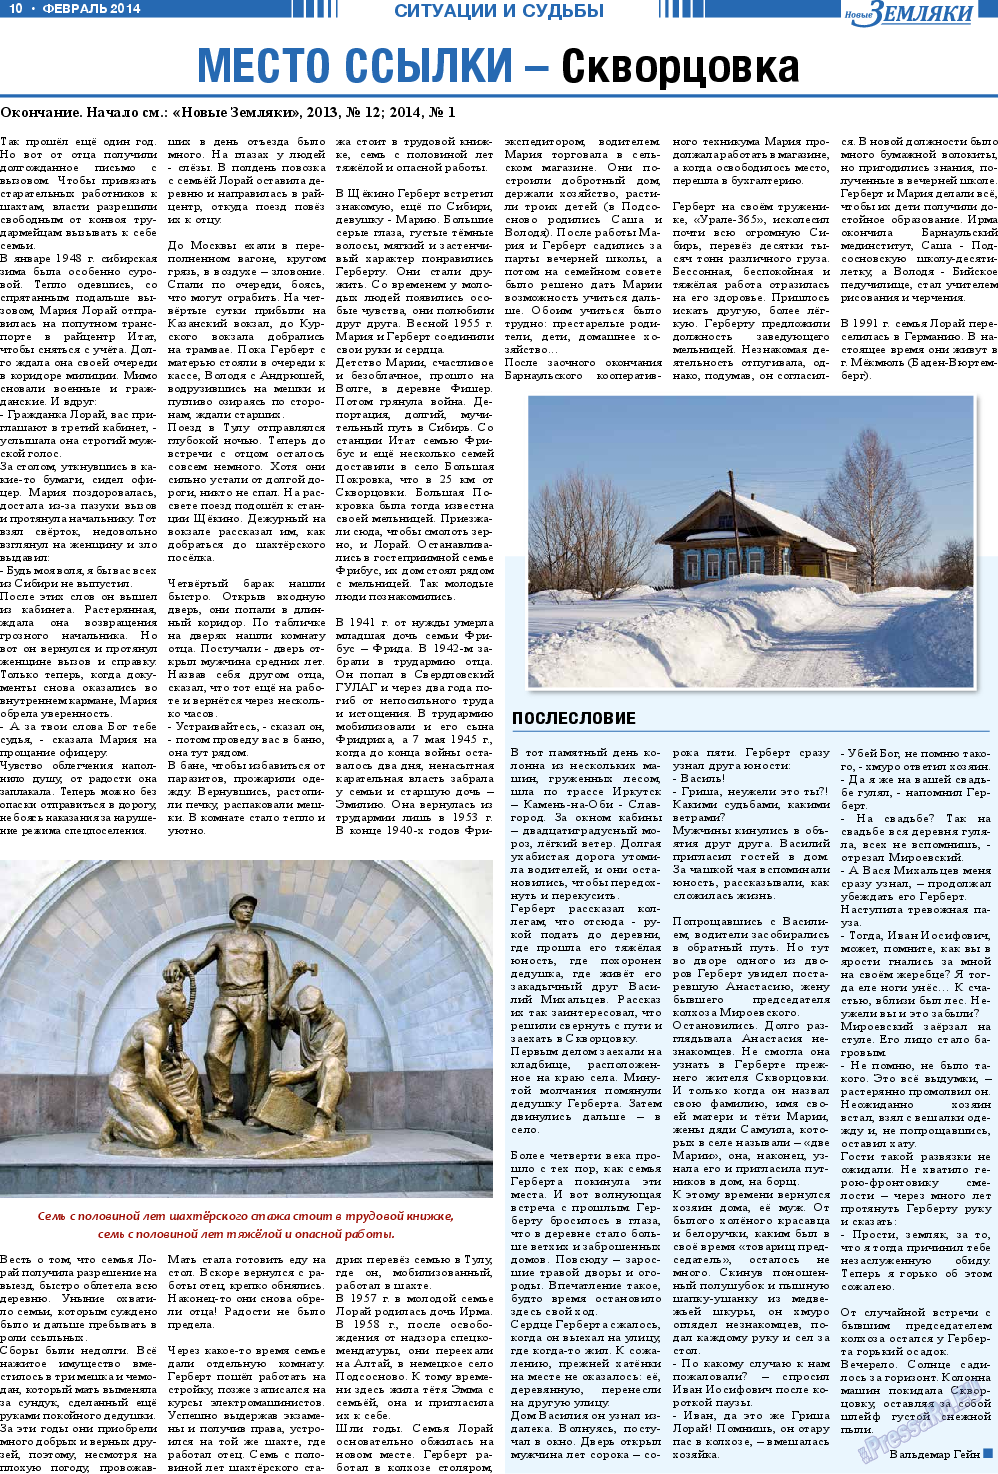 Новые Земляки (газета). 2014 год, номер 2, стр. 10